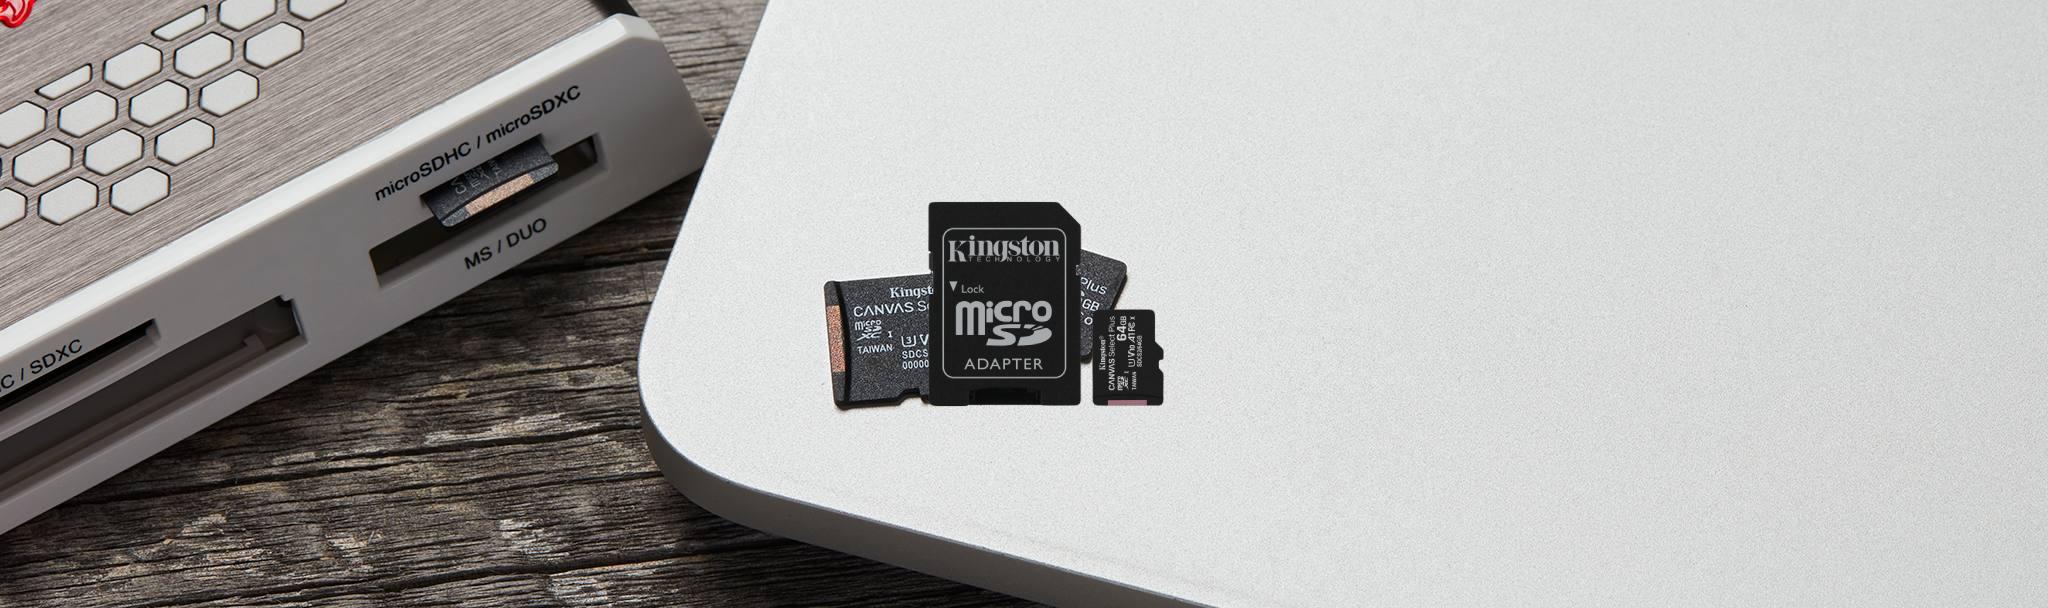 Karta pamięci Kingston Canvas Select Plus 64GB 100MB microSDXC CL10 UHS-I Card z adapterem SD w zestawie: